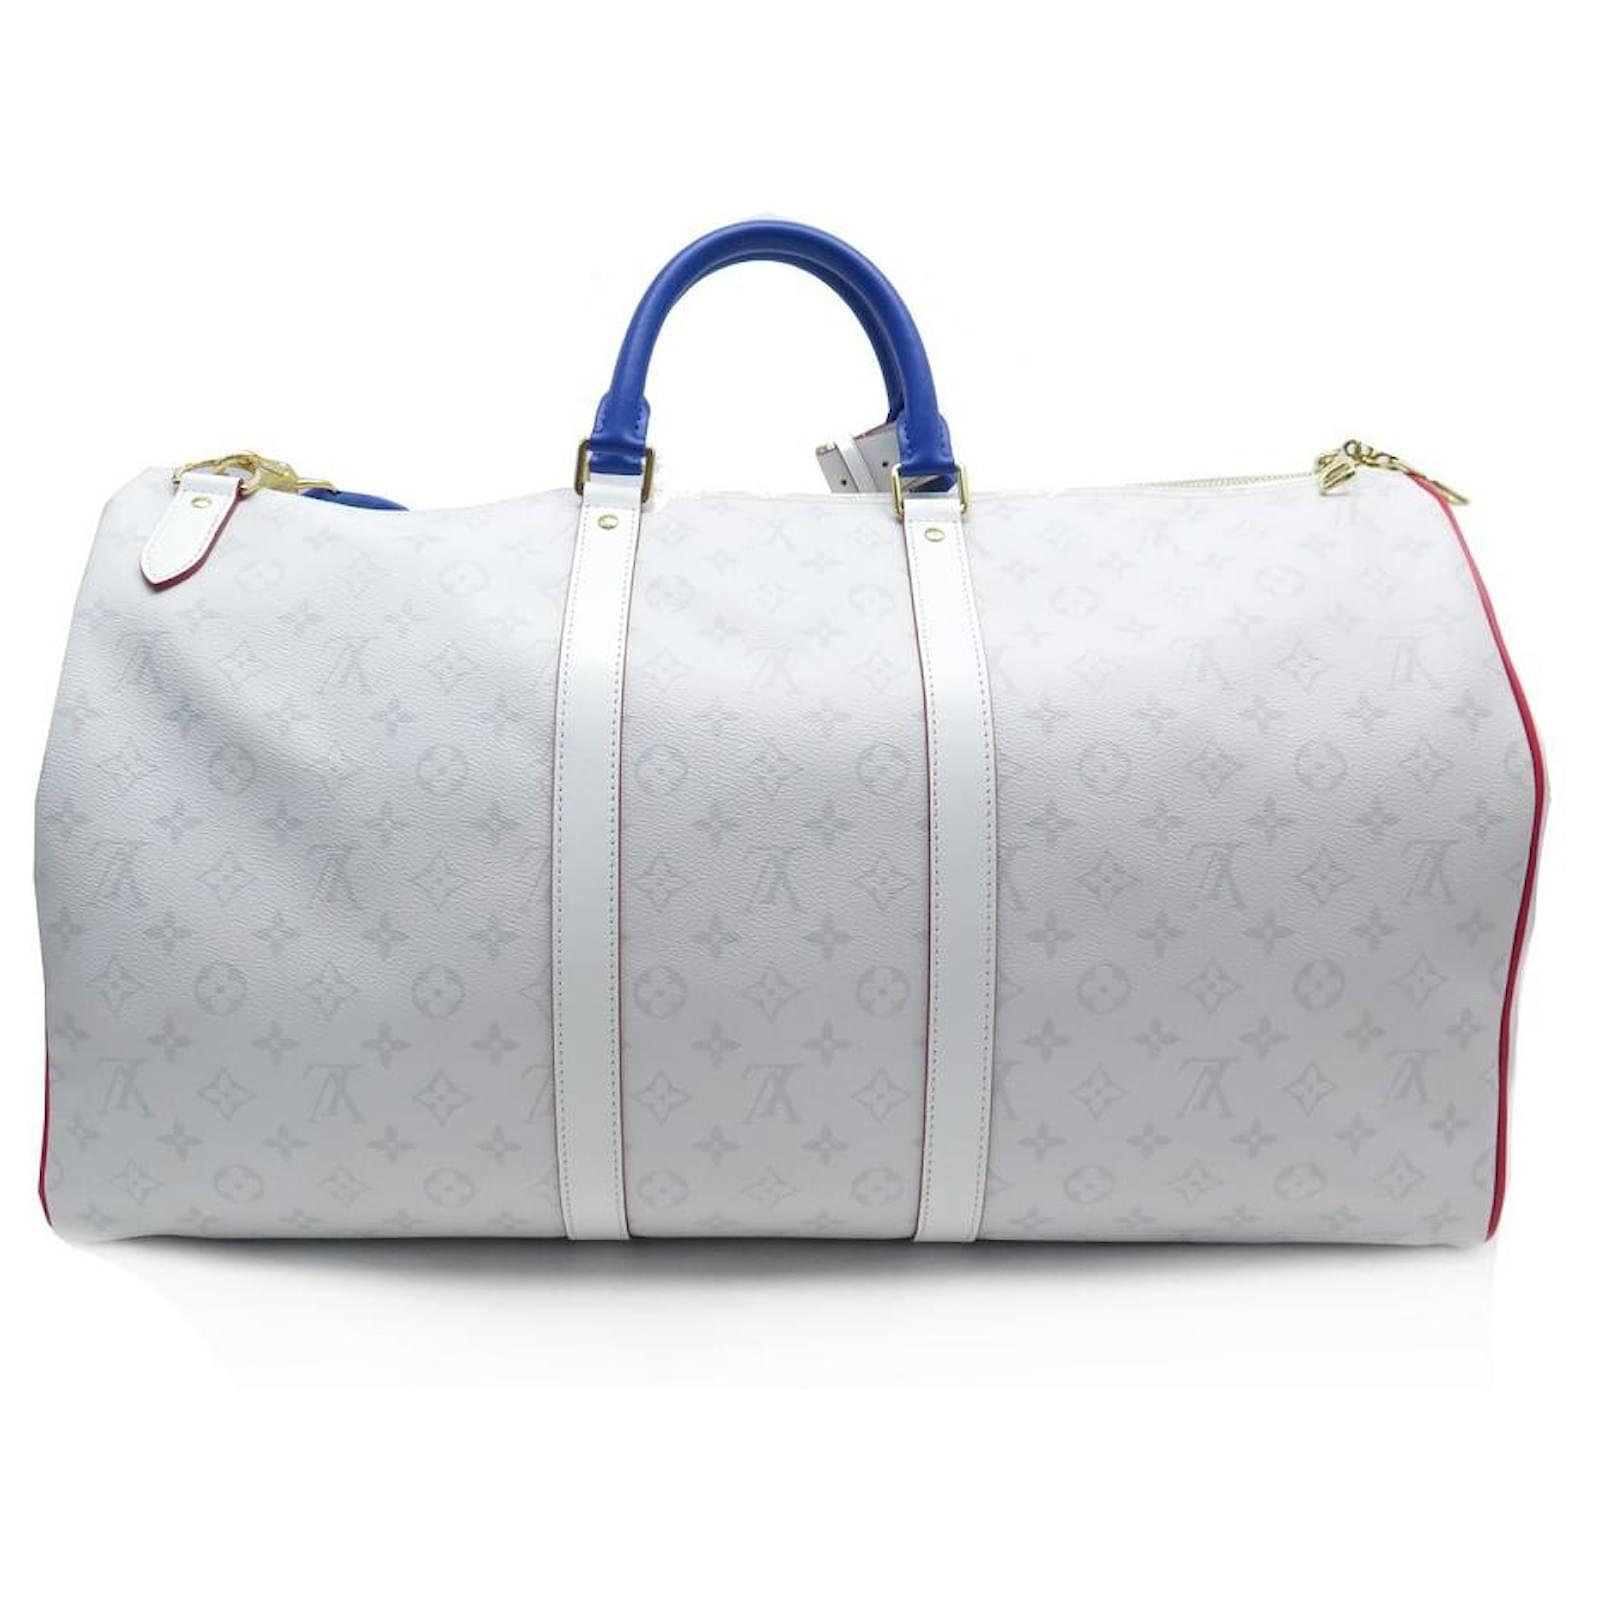 Bolsos de Louis Vuitton X NBA: equipaje de lujo irse de vacaciones